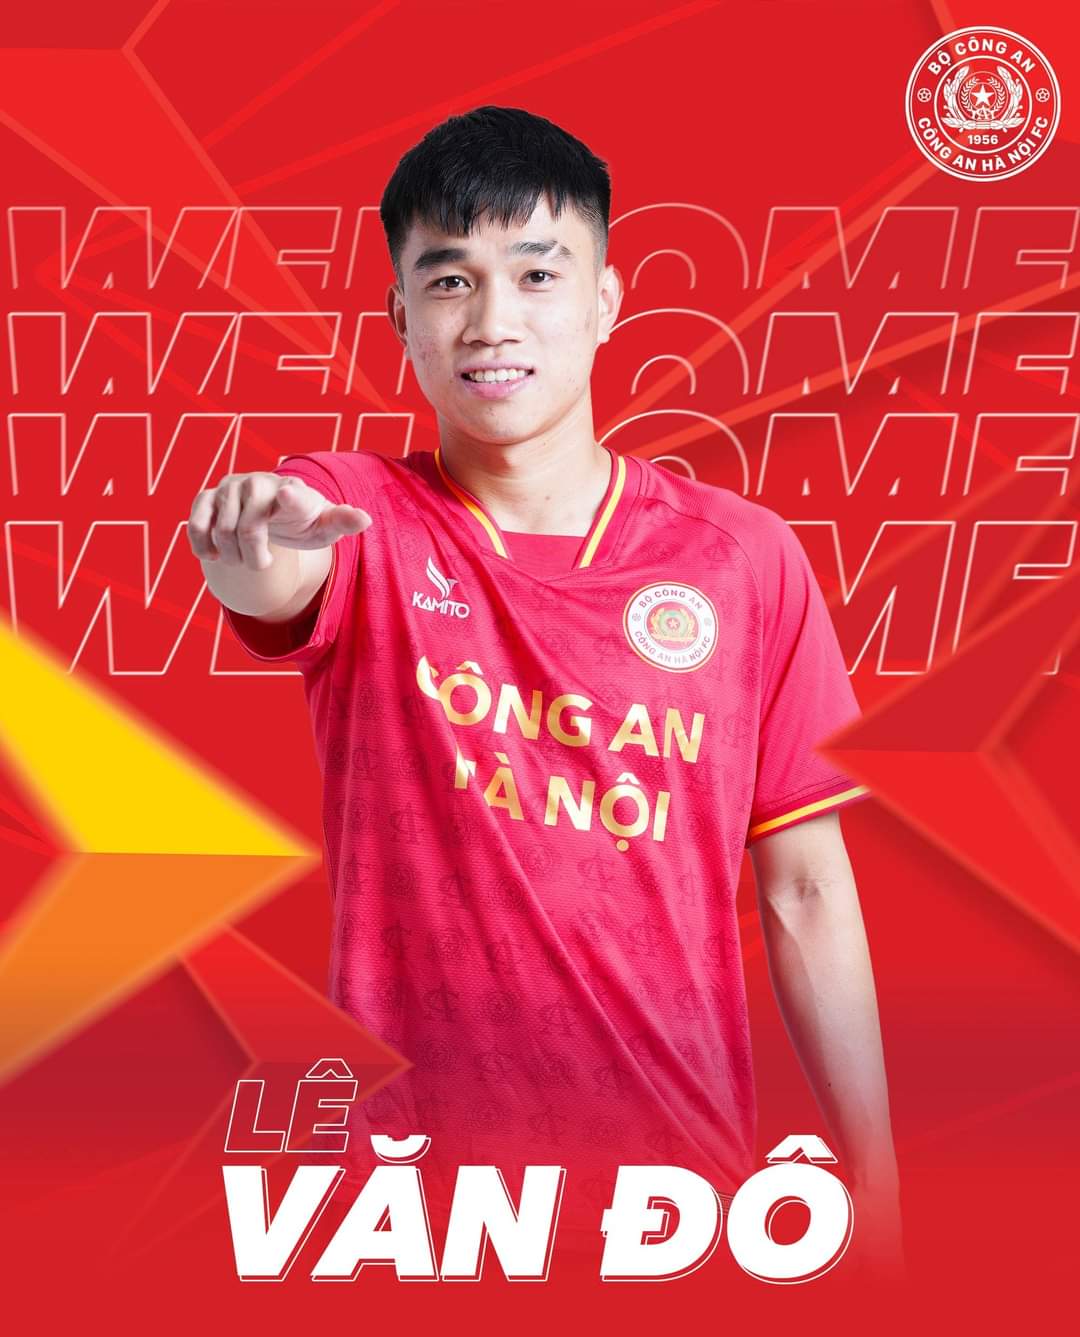 Lê Văn Đô là cầu thủ bóng đá chơi ở vị trí Tiền vệ cánh cho câu lạc bộ bóng đá Công an Hà Nội